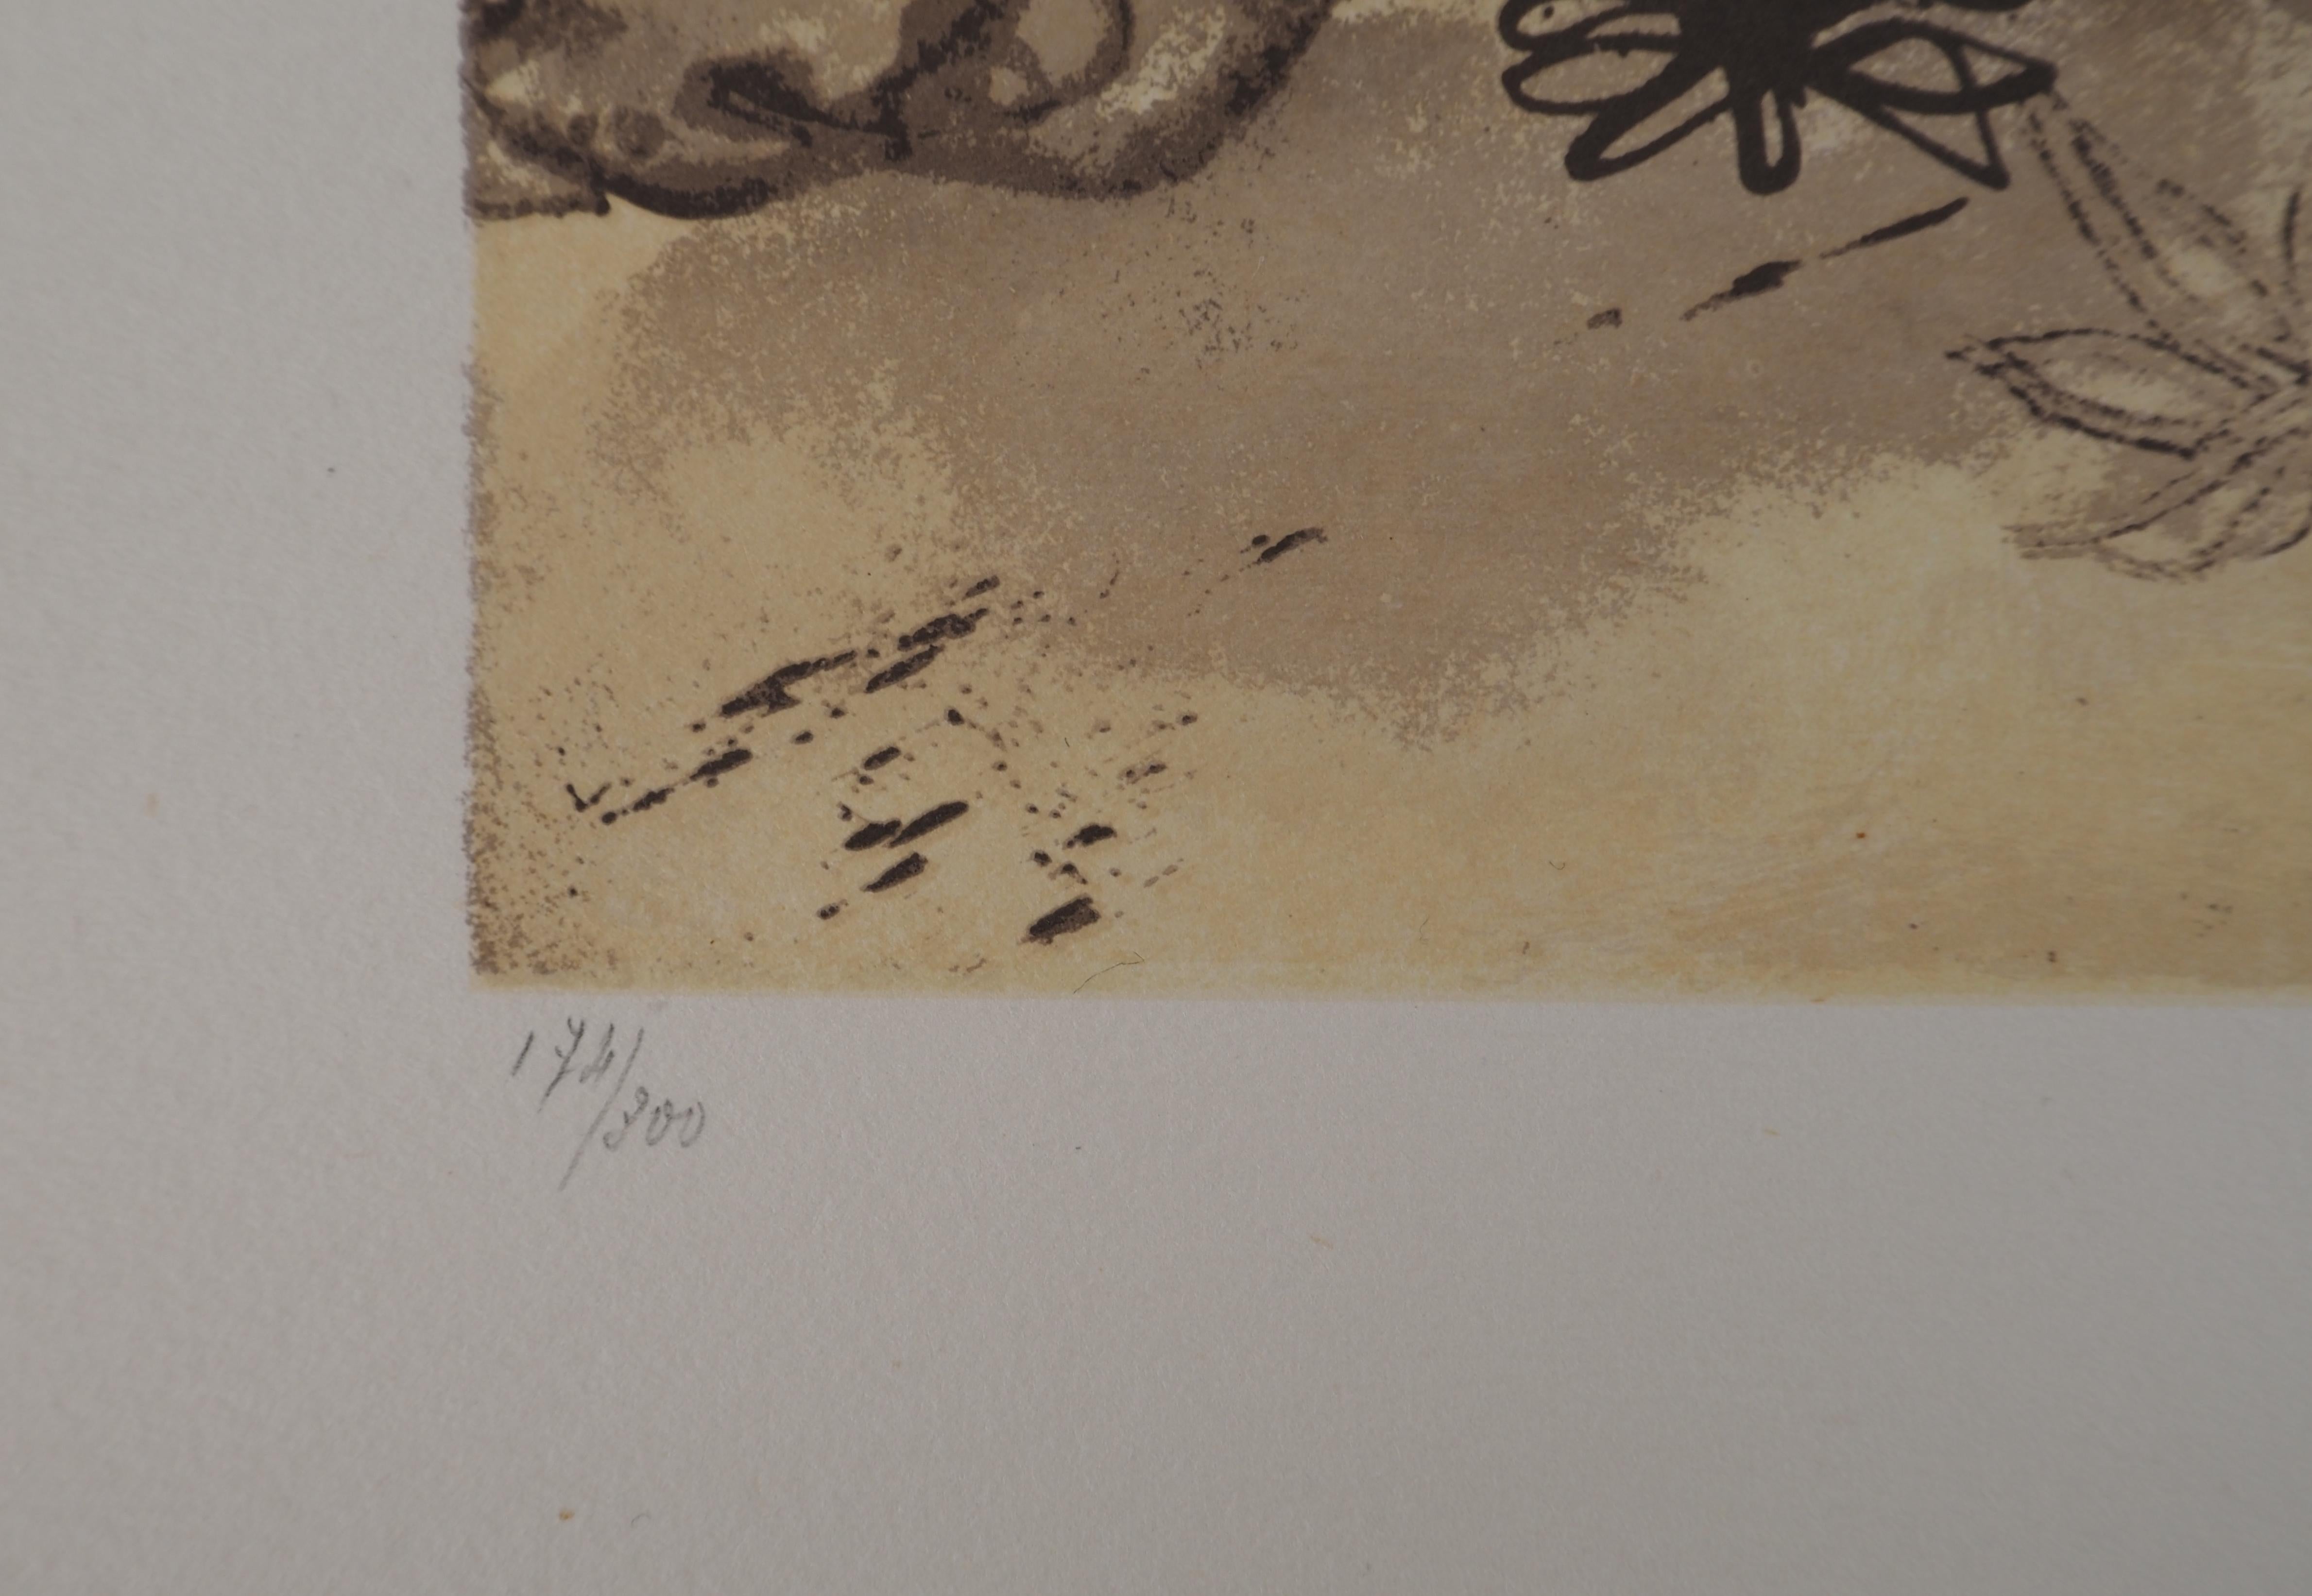 Salvador Dali (1904-1989)
Rhinocéros, hommage à Albrecht DURER, 1971

Lithographie originale
Signé au crayon
Numéroté / 300
Sur vellum Guarro 76 x 56.5 cm (c. 30 x 22 in)

REFERENCE : Catalogue raisonné de l'œuvre graphique Sala Gaspar, Barcelone